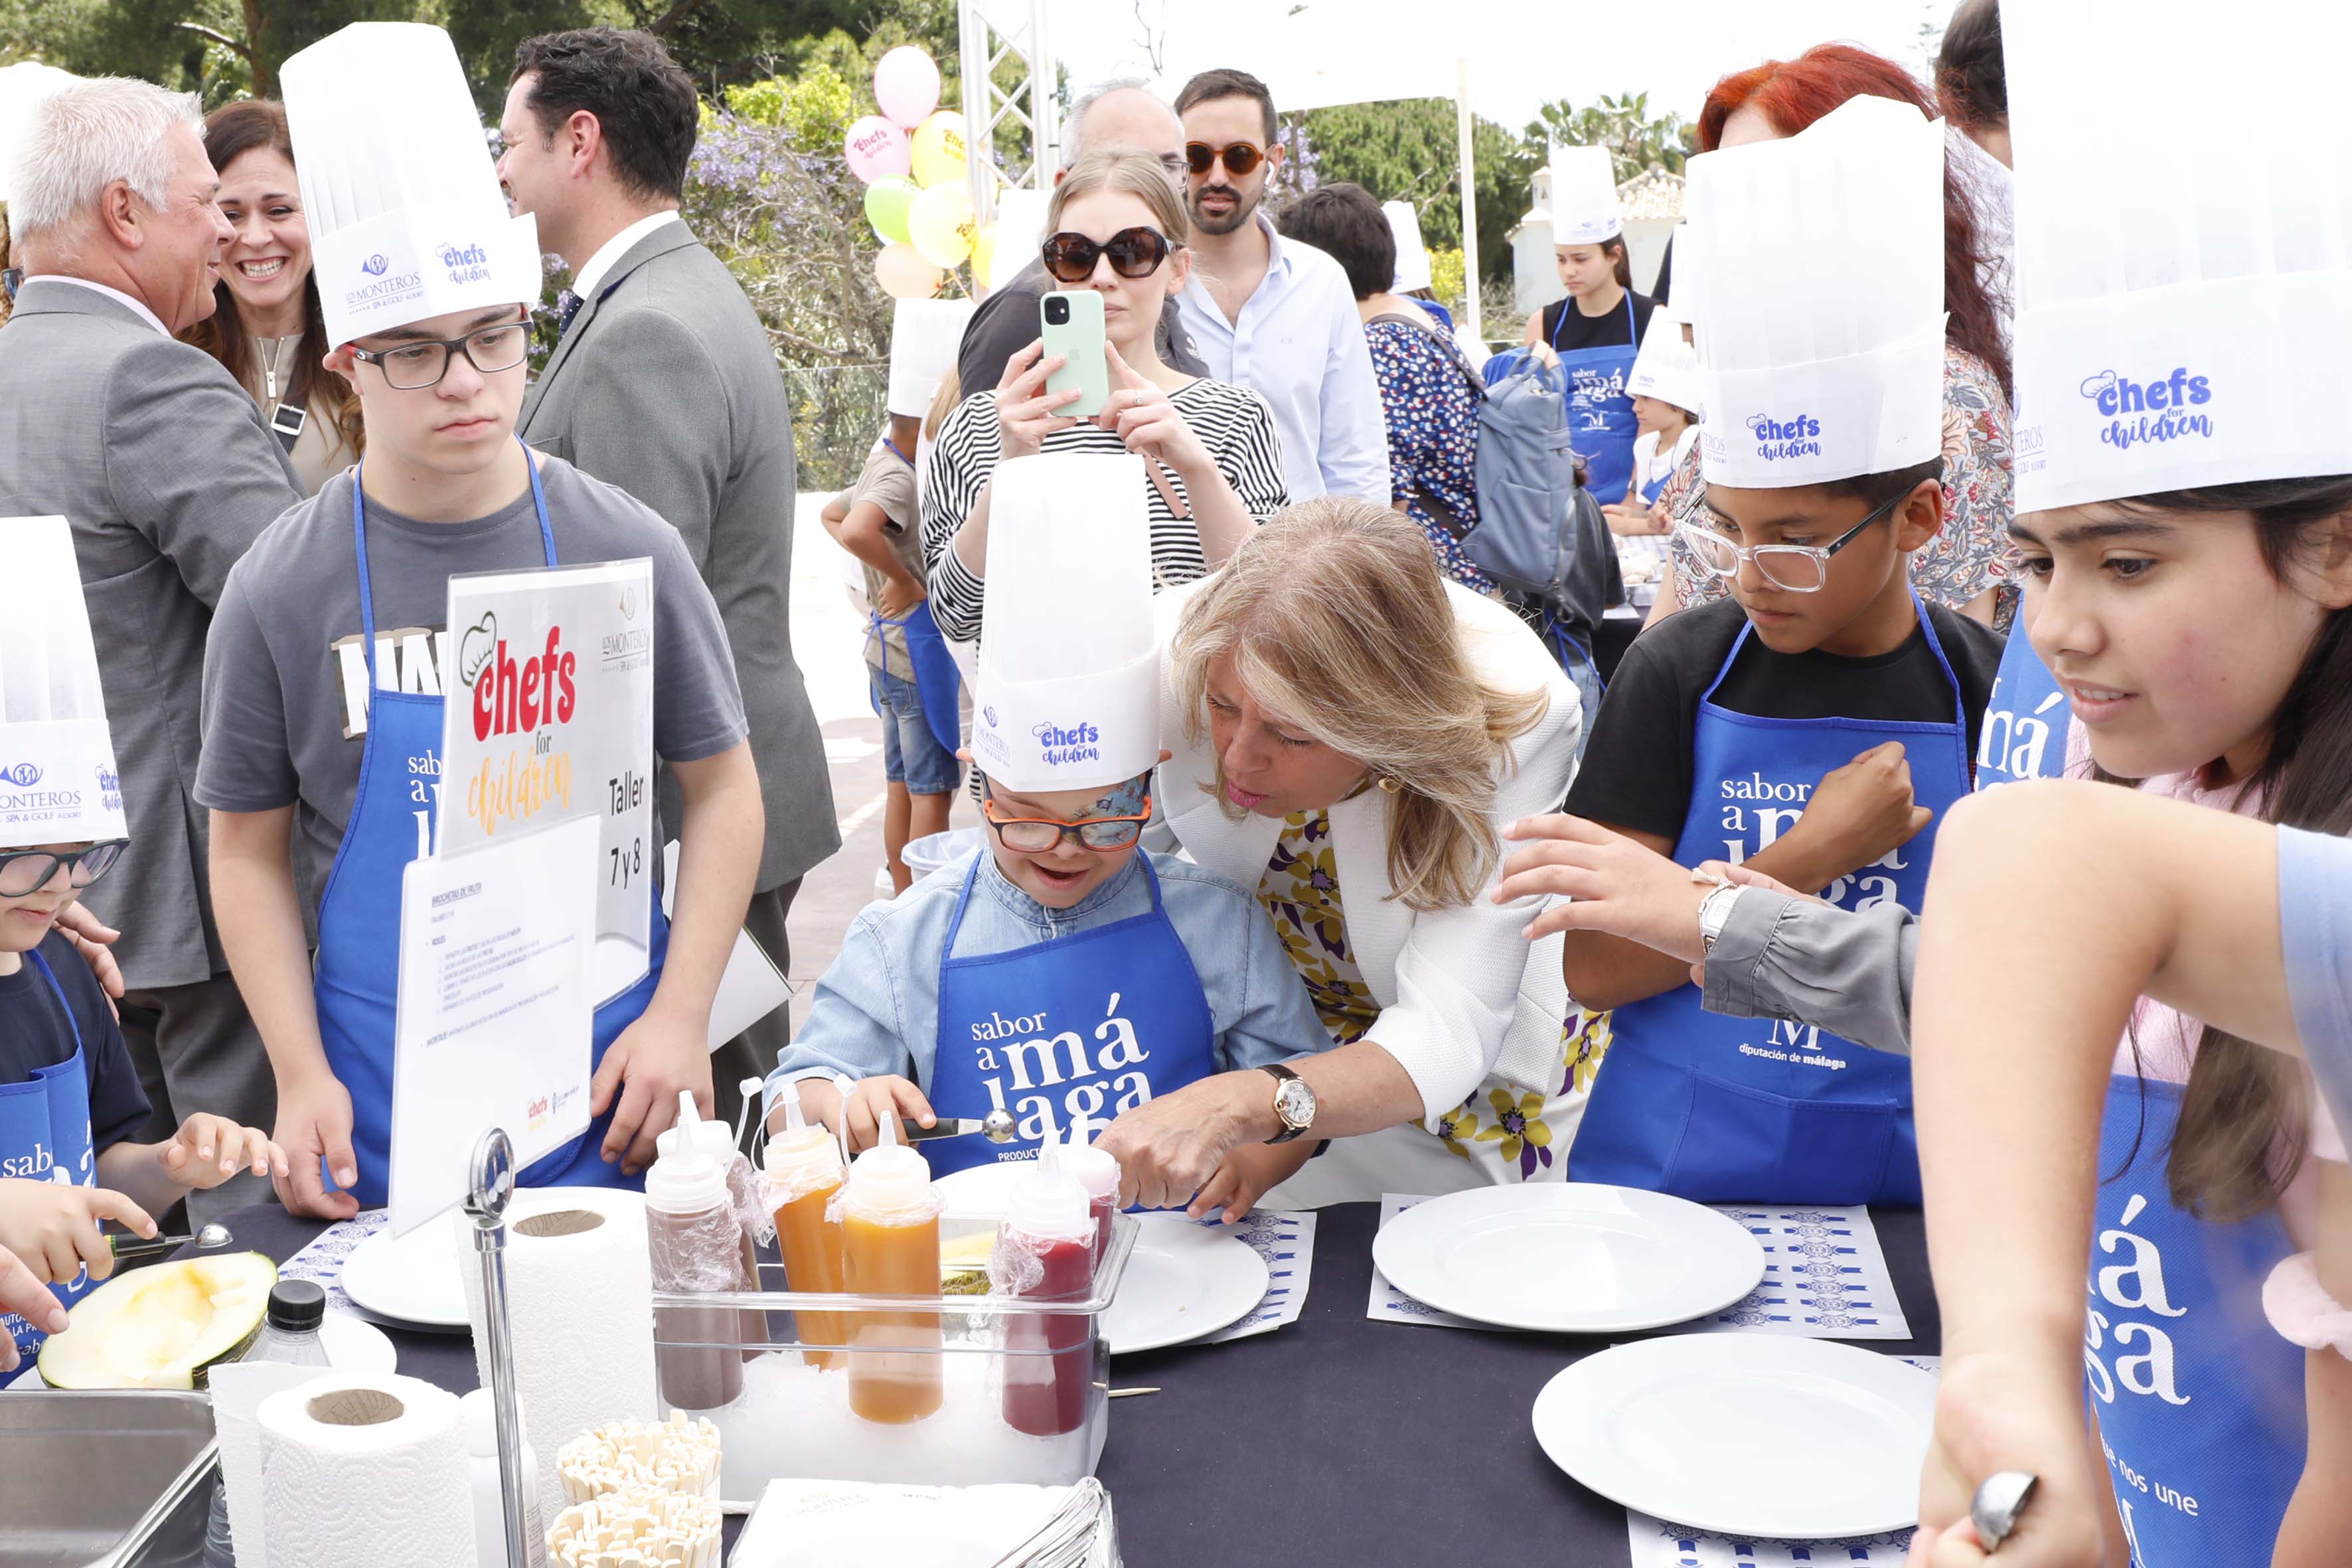 La alcaldesa subraya que la nueva edición de ‘Chefs for Children’ “vuelve a aunar con éxito solidaridad y alta gastronomía en Marbella” con la participación de 30 estrellas Michelin y 150 escolares